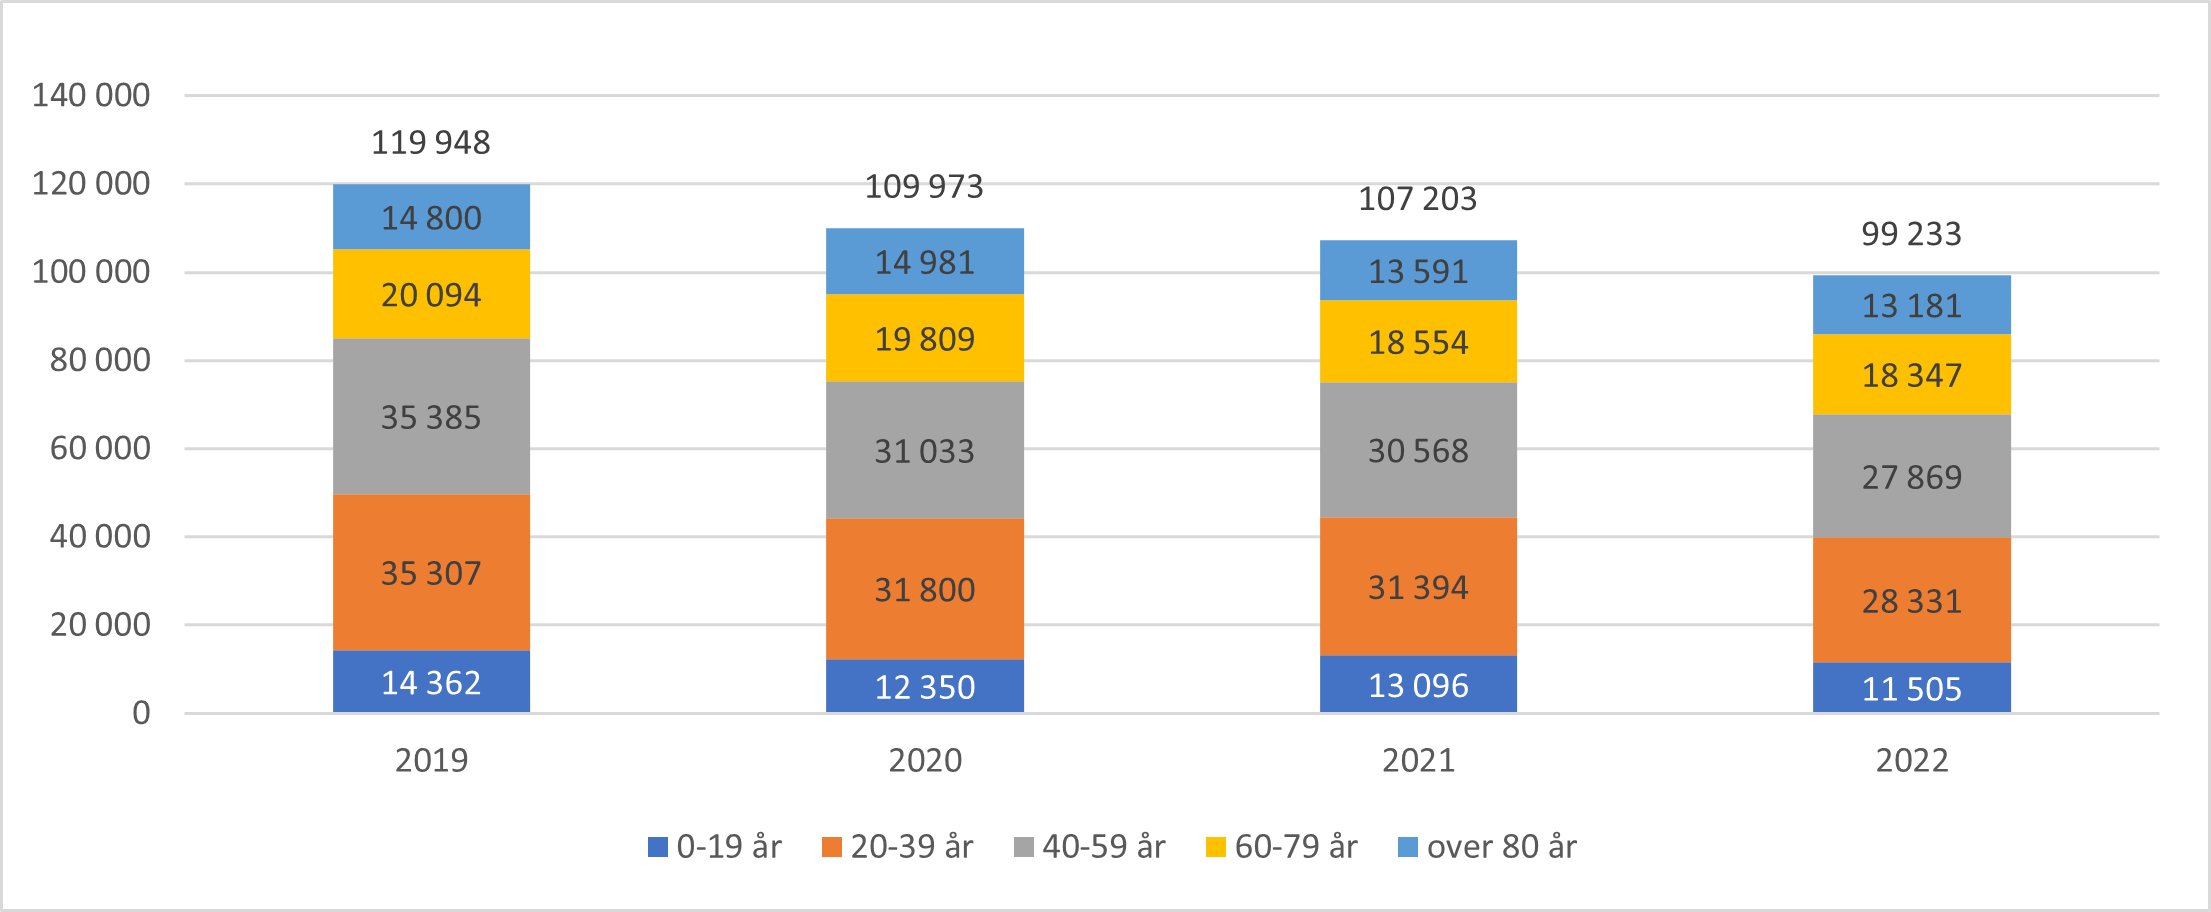 Antall tverrfaglige samarbeidsmøter (absolutte tall) fordelt på aldersgrupper og totalt per år, 2019-2022.